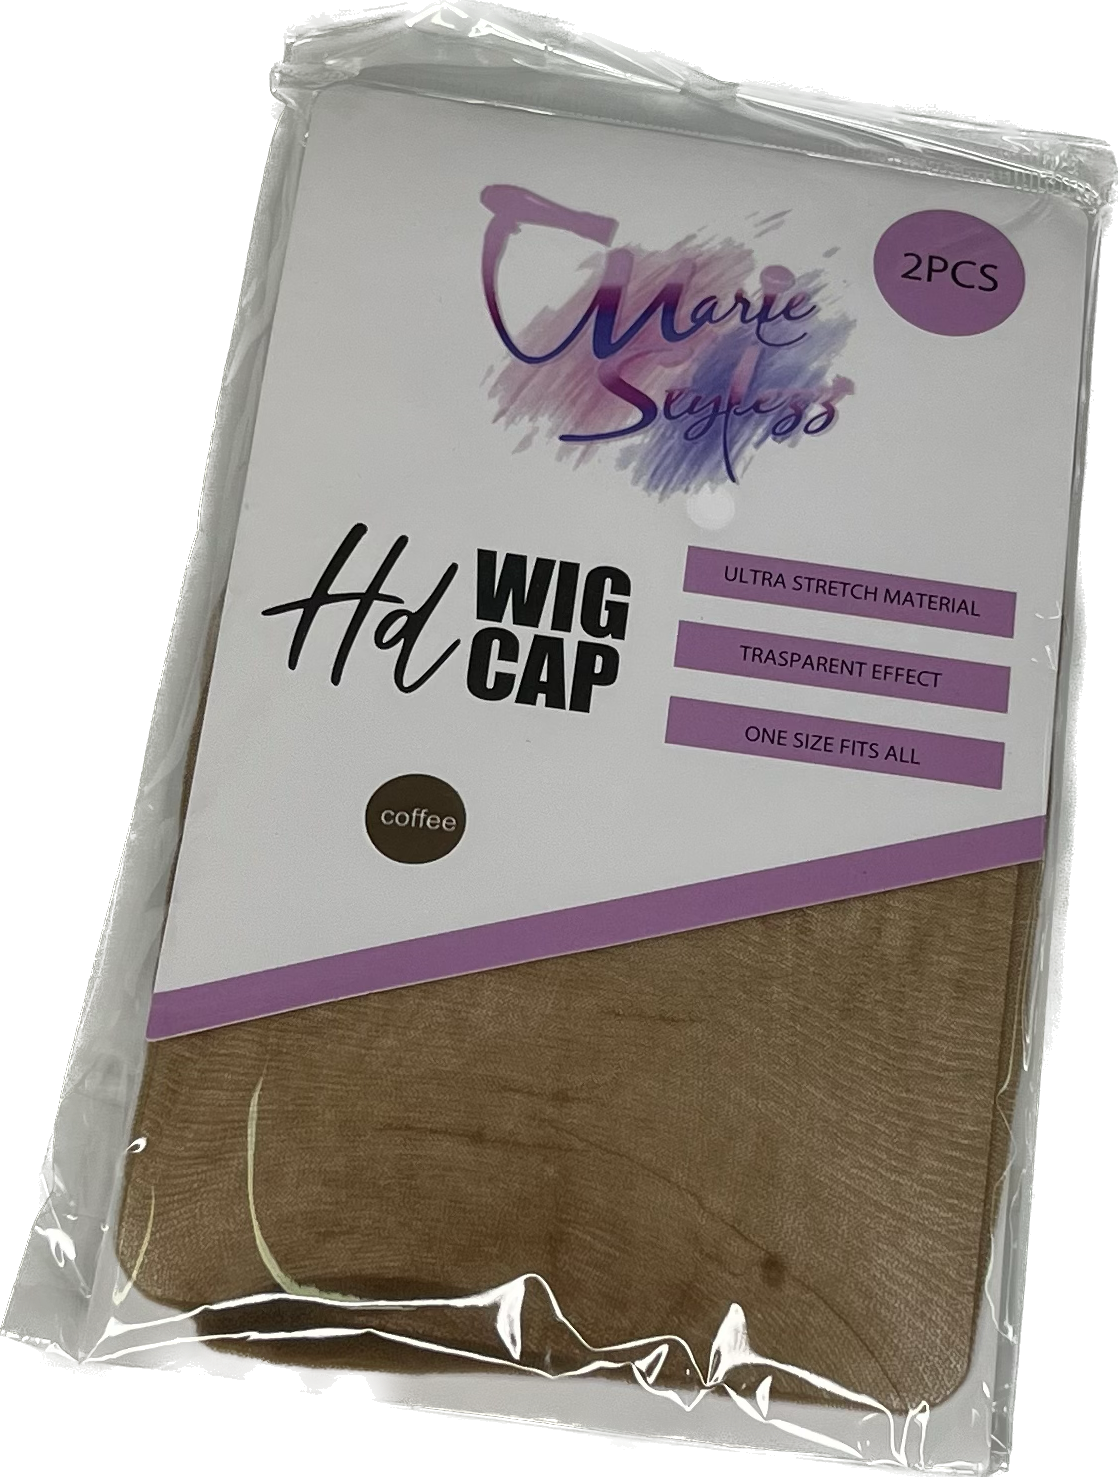 Hd Wig Cap